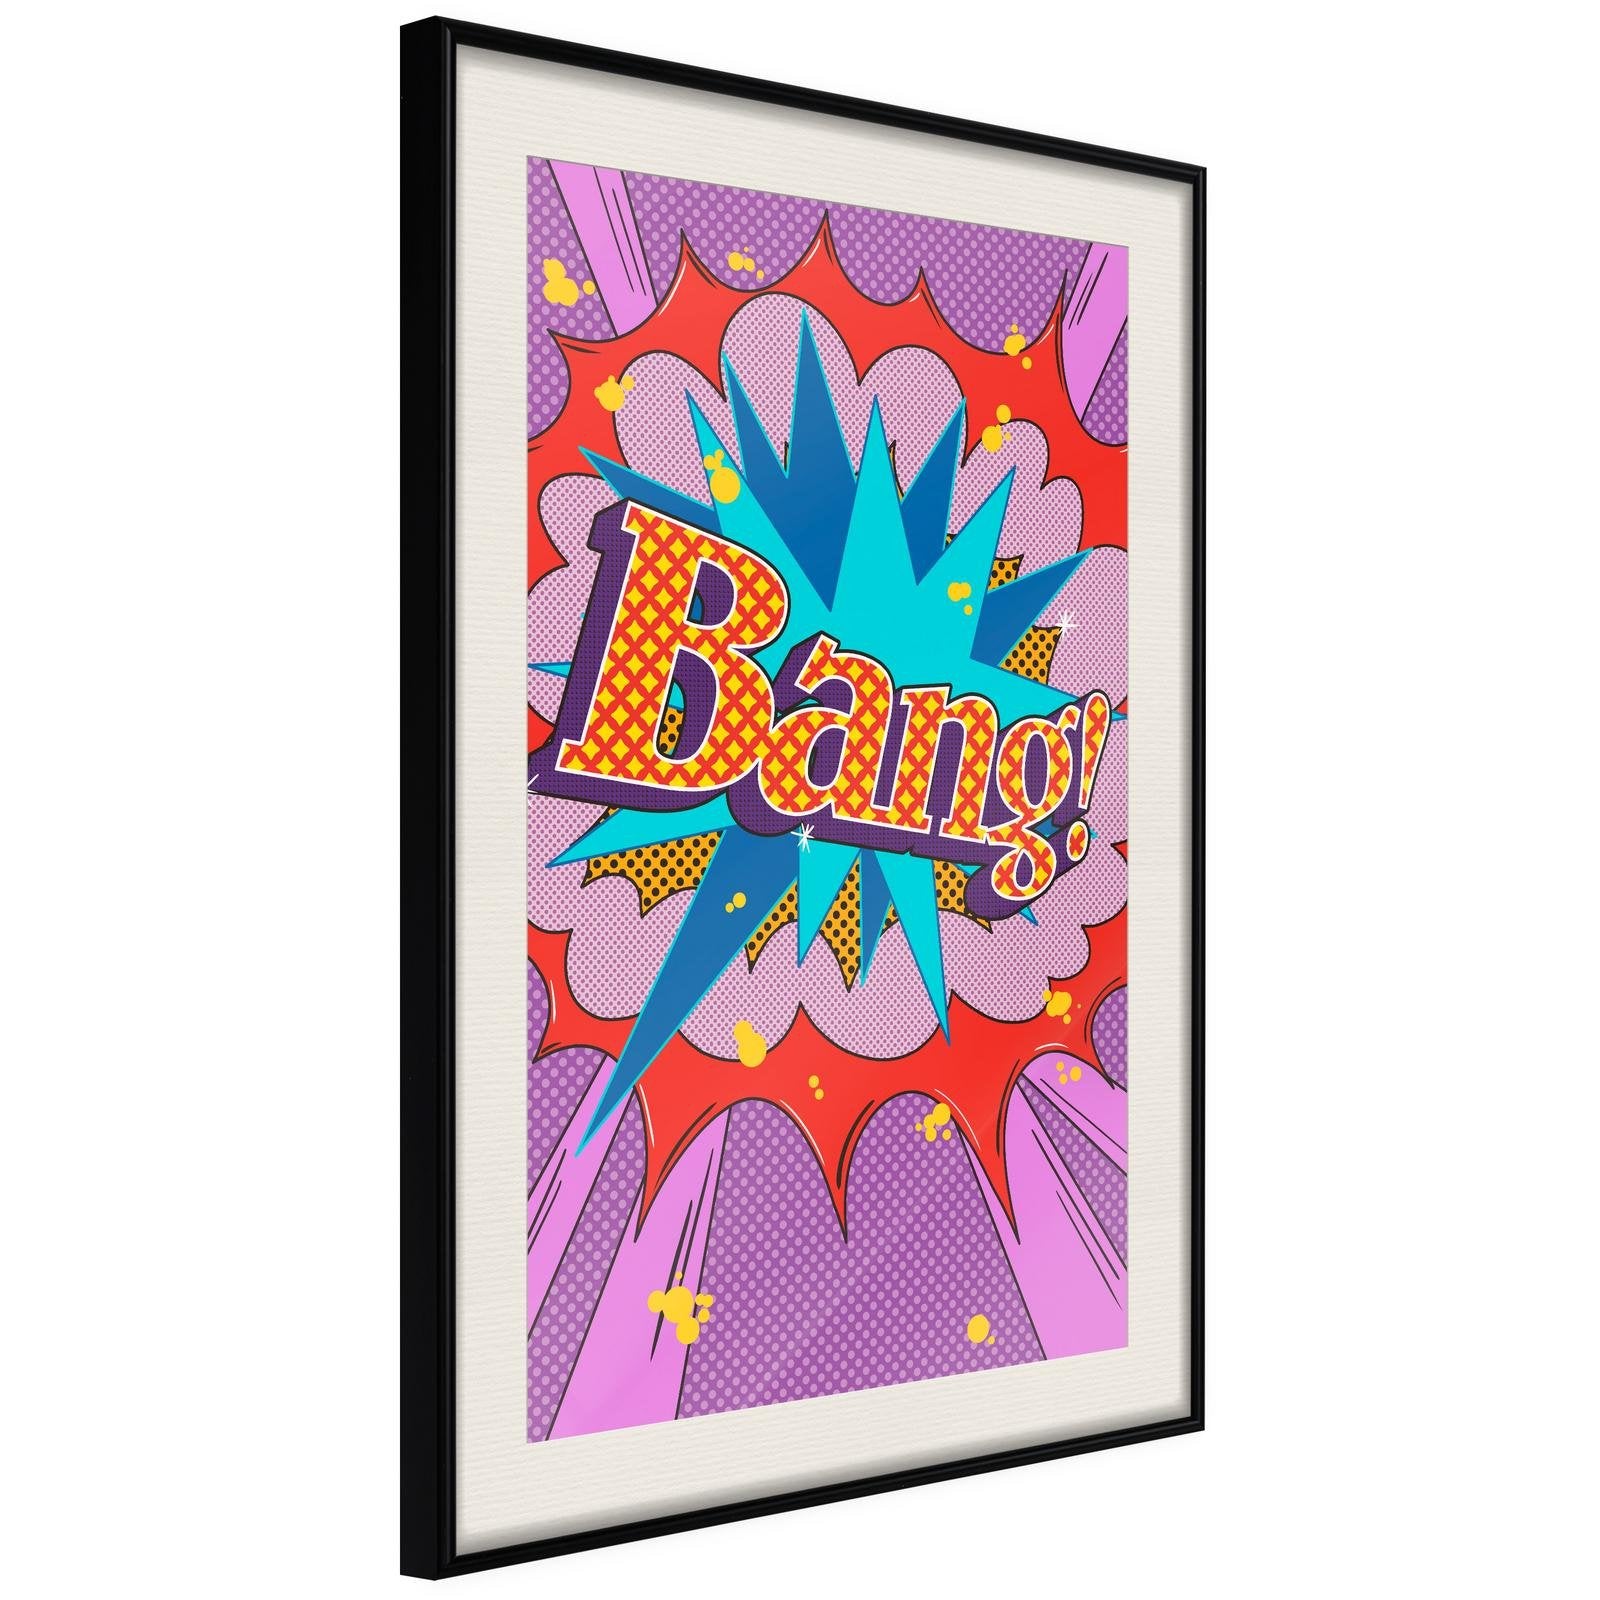 Poster Bang